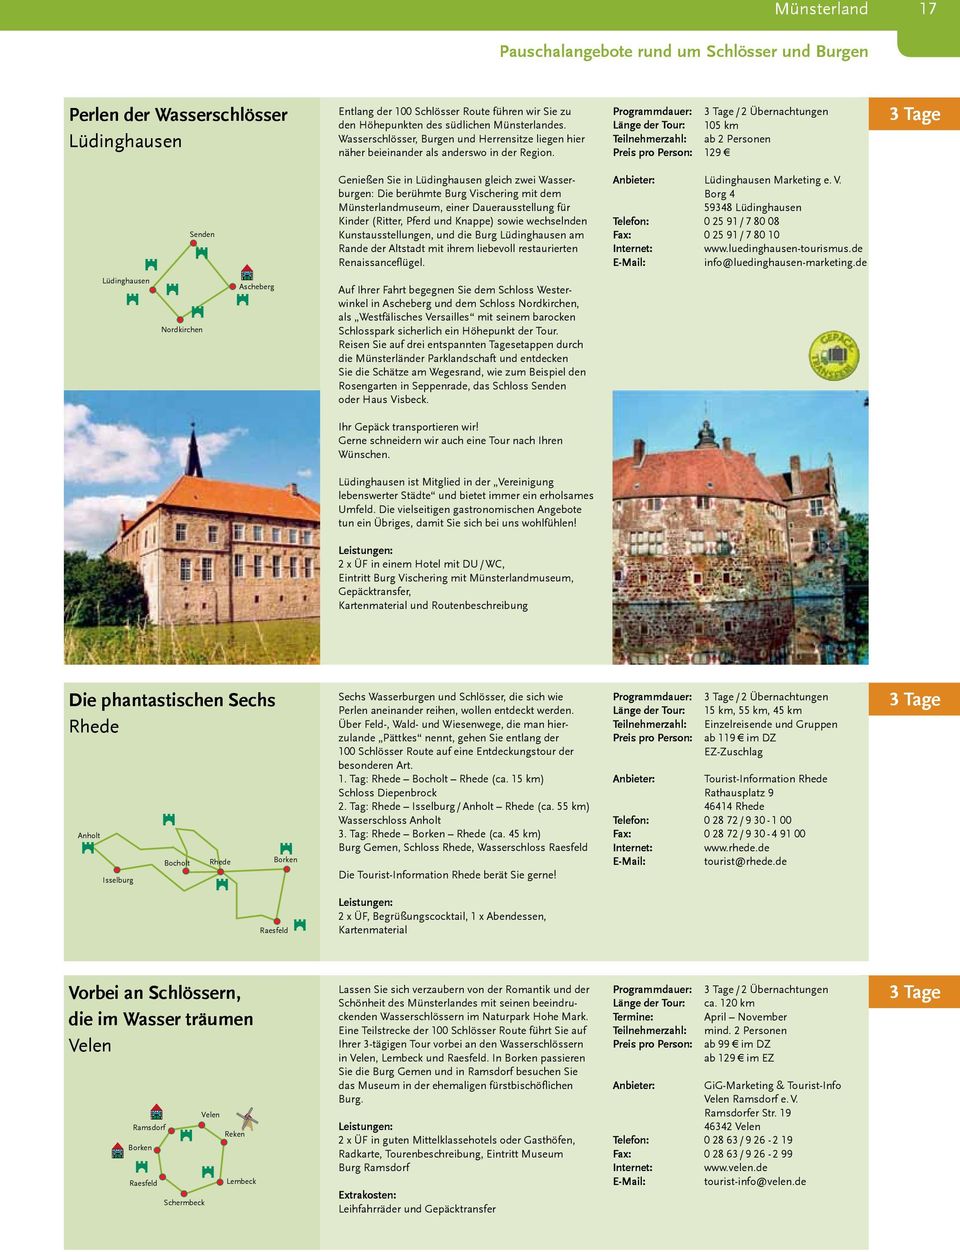 .. Genießen Sie in Lüdinghausen gleich zwei Wasserburgen: Die berühmte Burg Vischering mit dem Münsterlandmuseum, einer Dauerausstellung für xxx Kinder (Ritter, Pferd und Knappe) sowie wechselnden